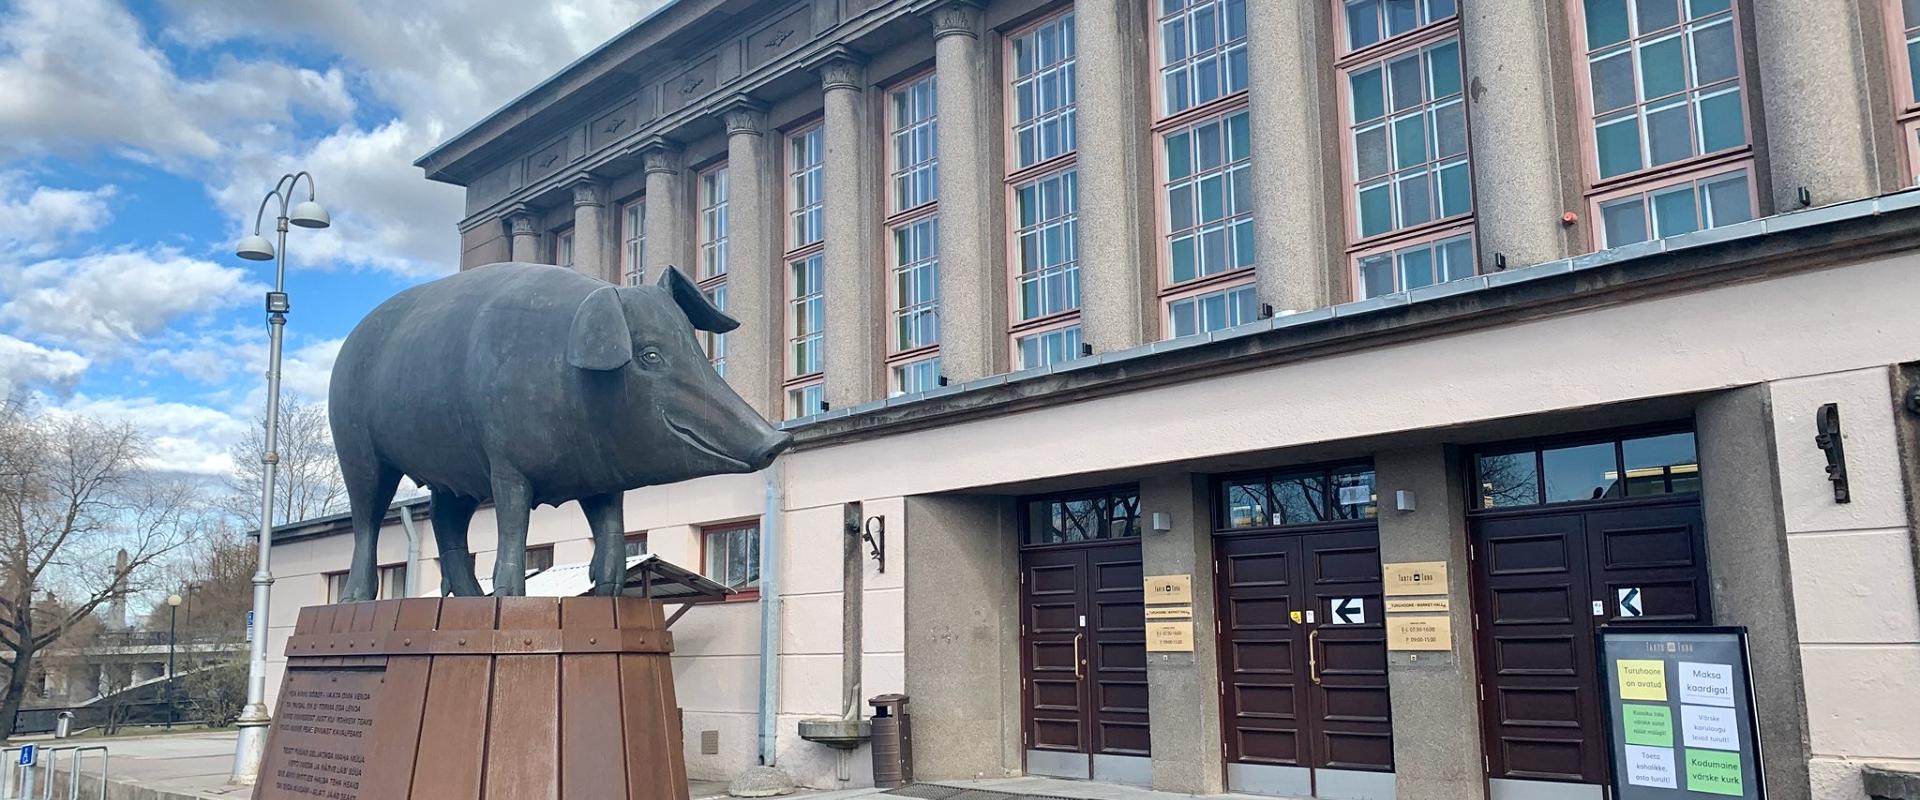 Vor dem Marktgebäude von Tartu grüßt das Bronzene Schwein